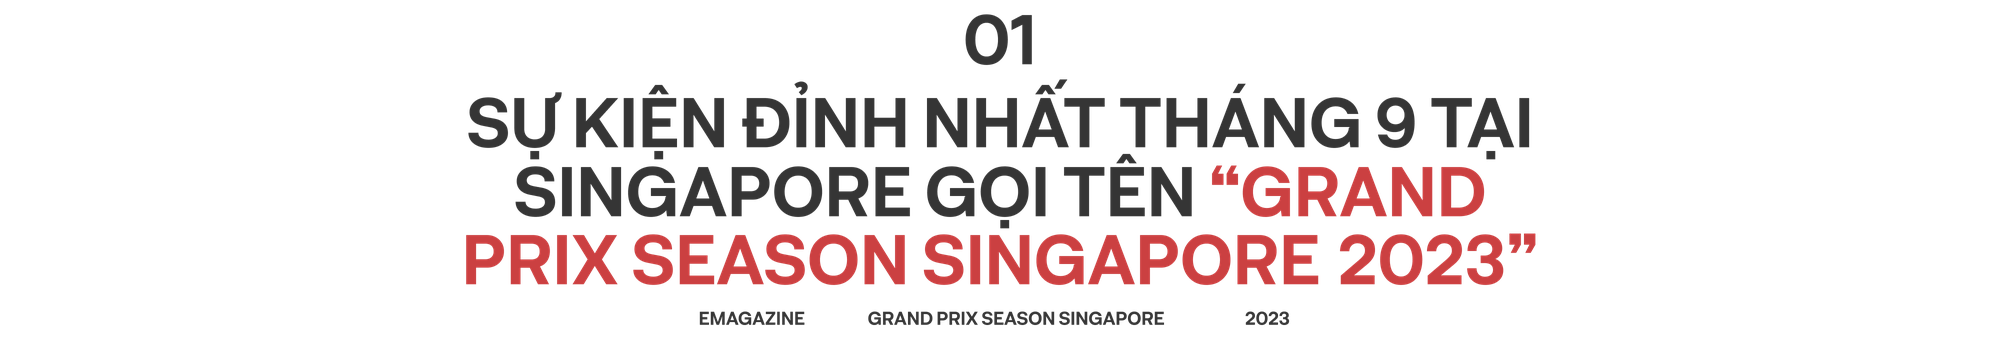 Bùng nổ trải nghiệm tại singapore trong mùa Grand Prix Singapore 2023 - Ảnh 1.